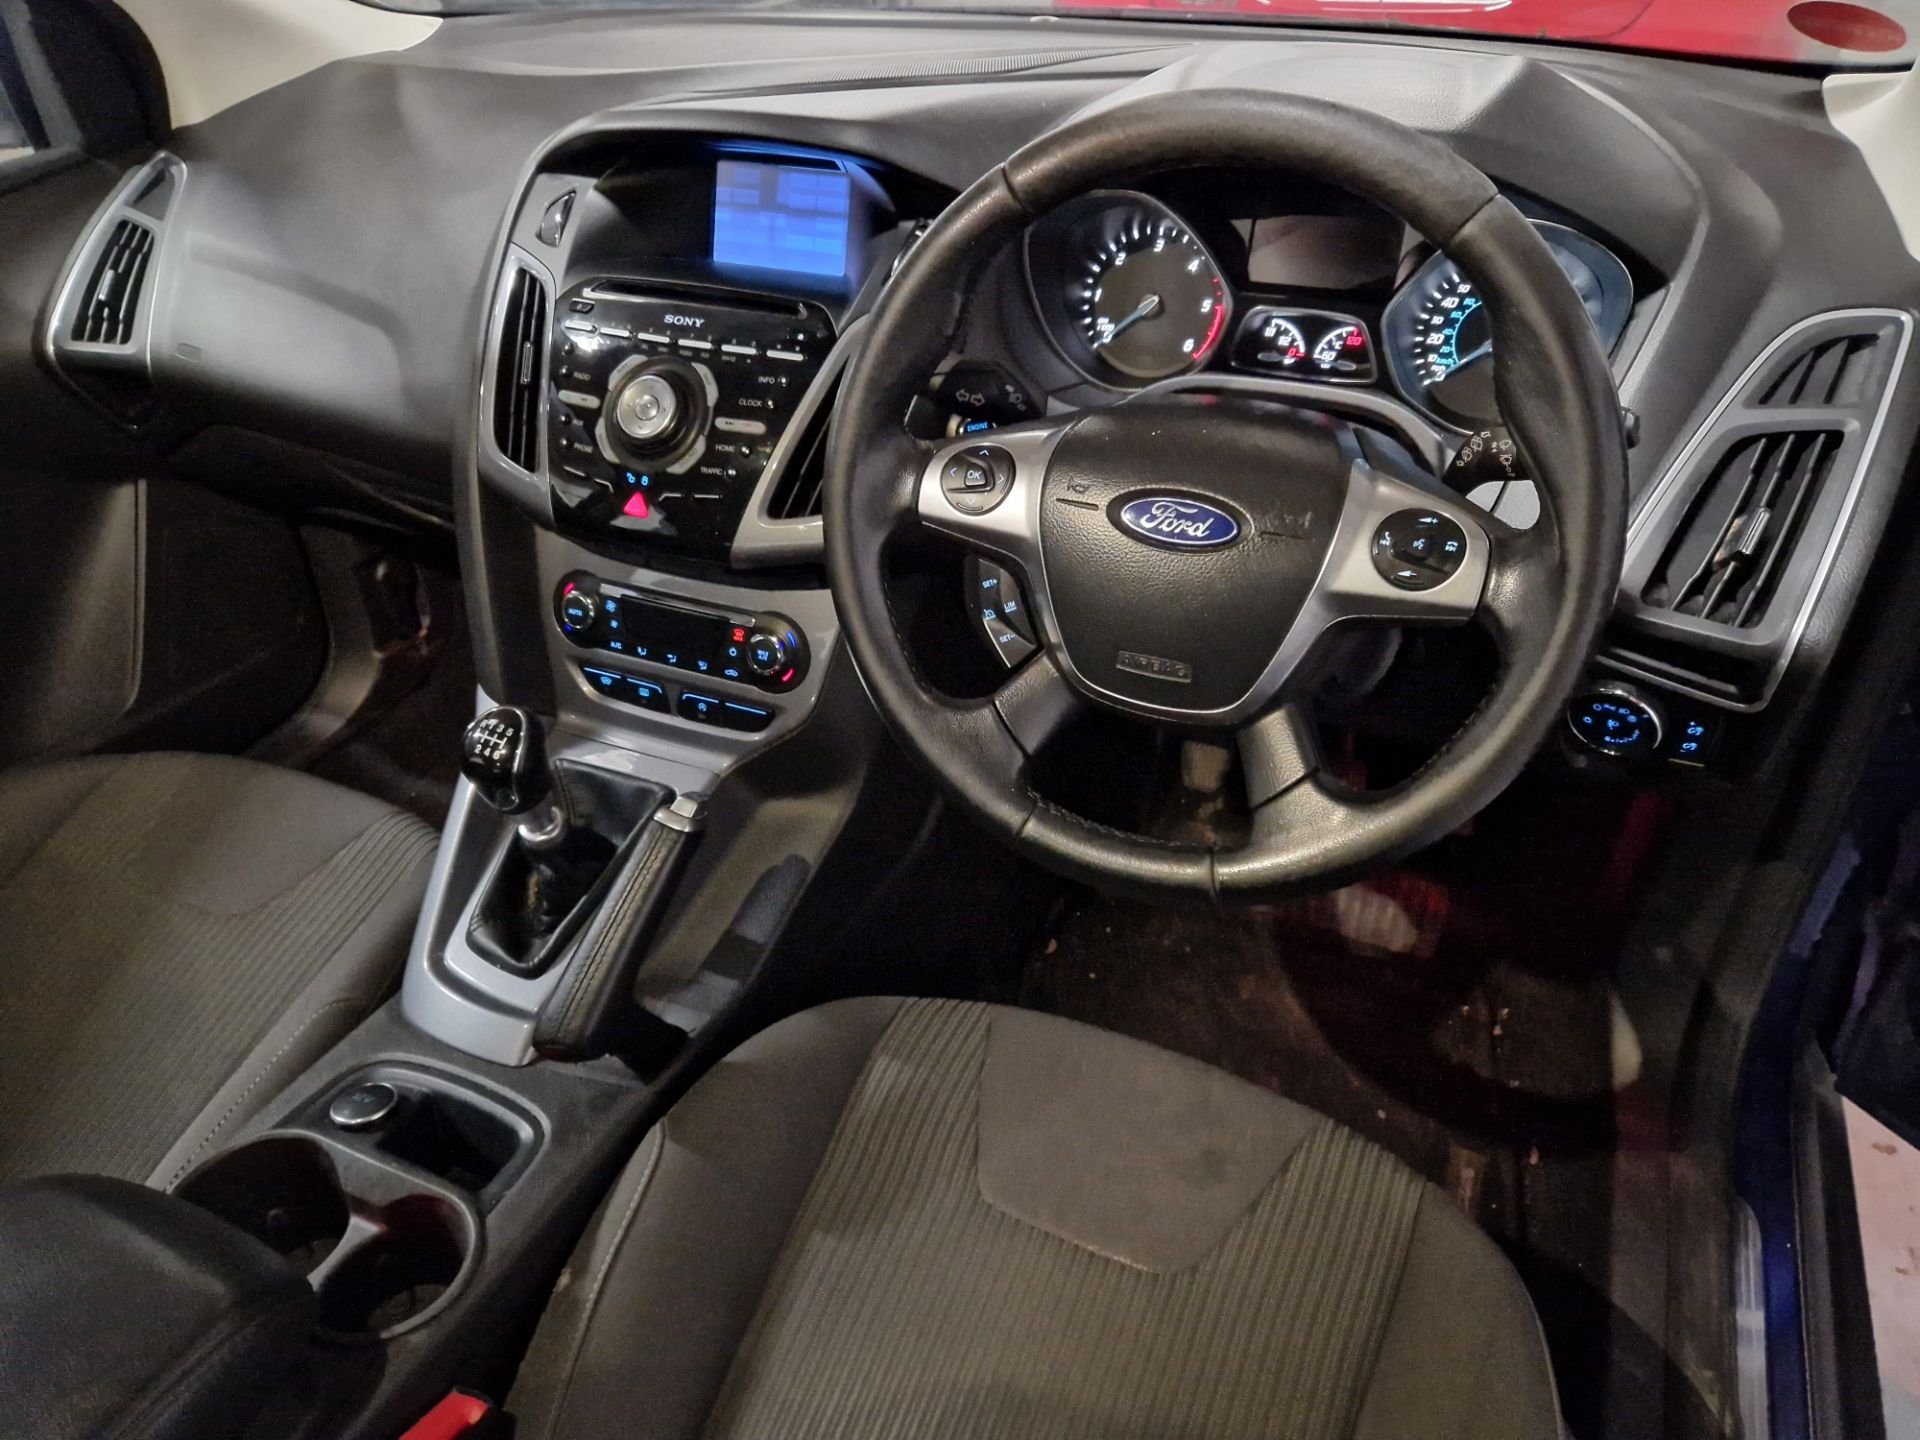 Ford Focus 1.6 TDCi 115 Titanium Navigator 5dr Diesel Hatchback, Registration No. BG63 BCY, Mileage: - Bild 6 aus 8